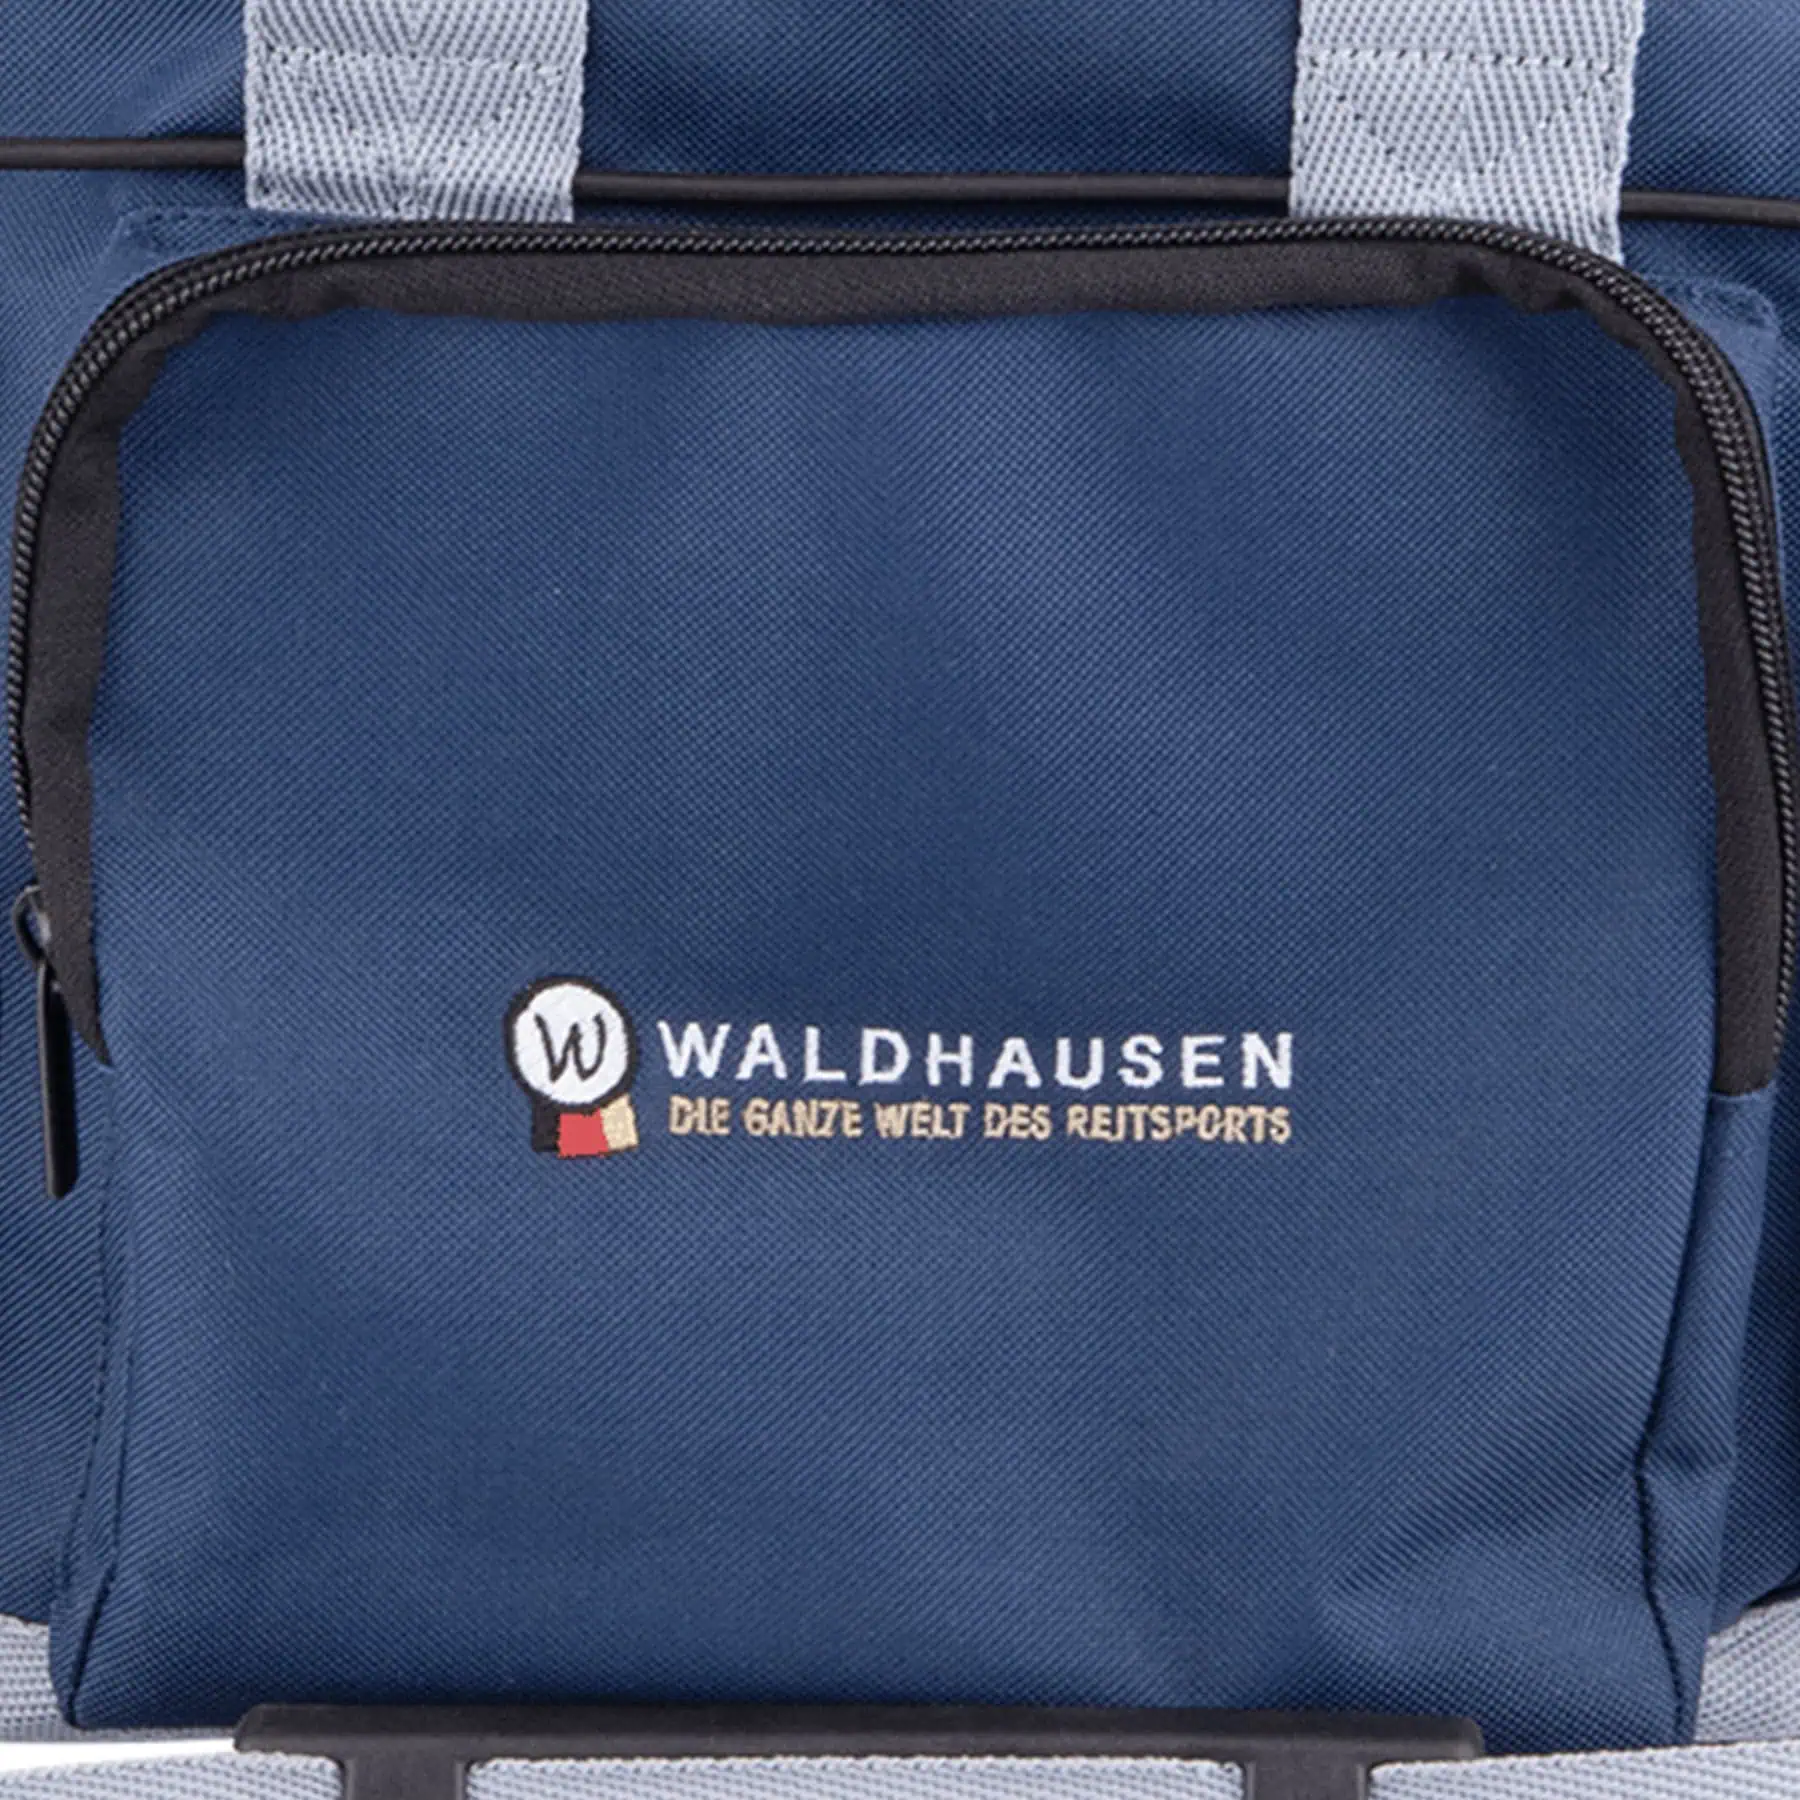 Waldhausen Putz- und Turniertasche, navy